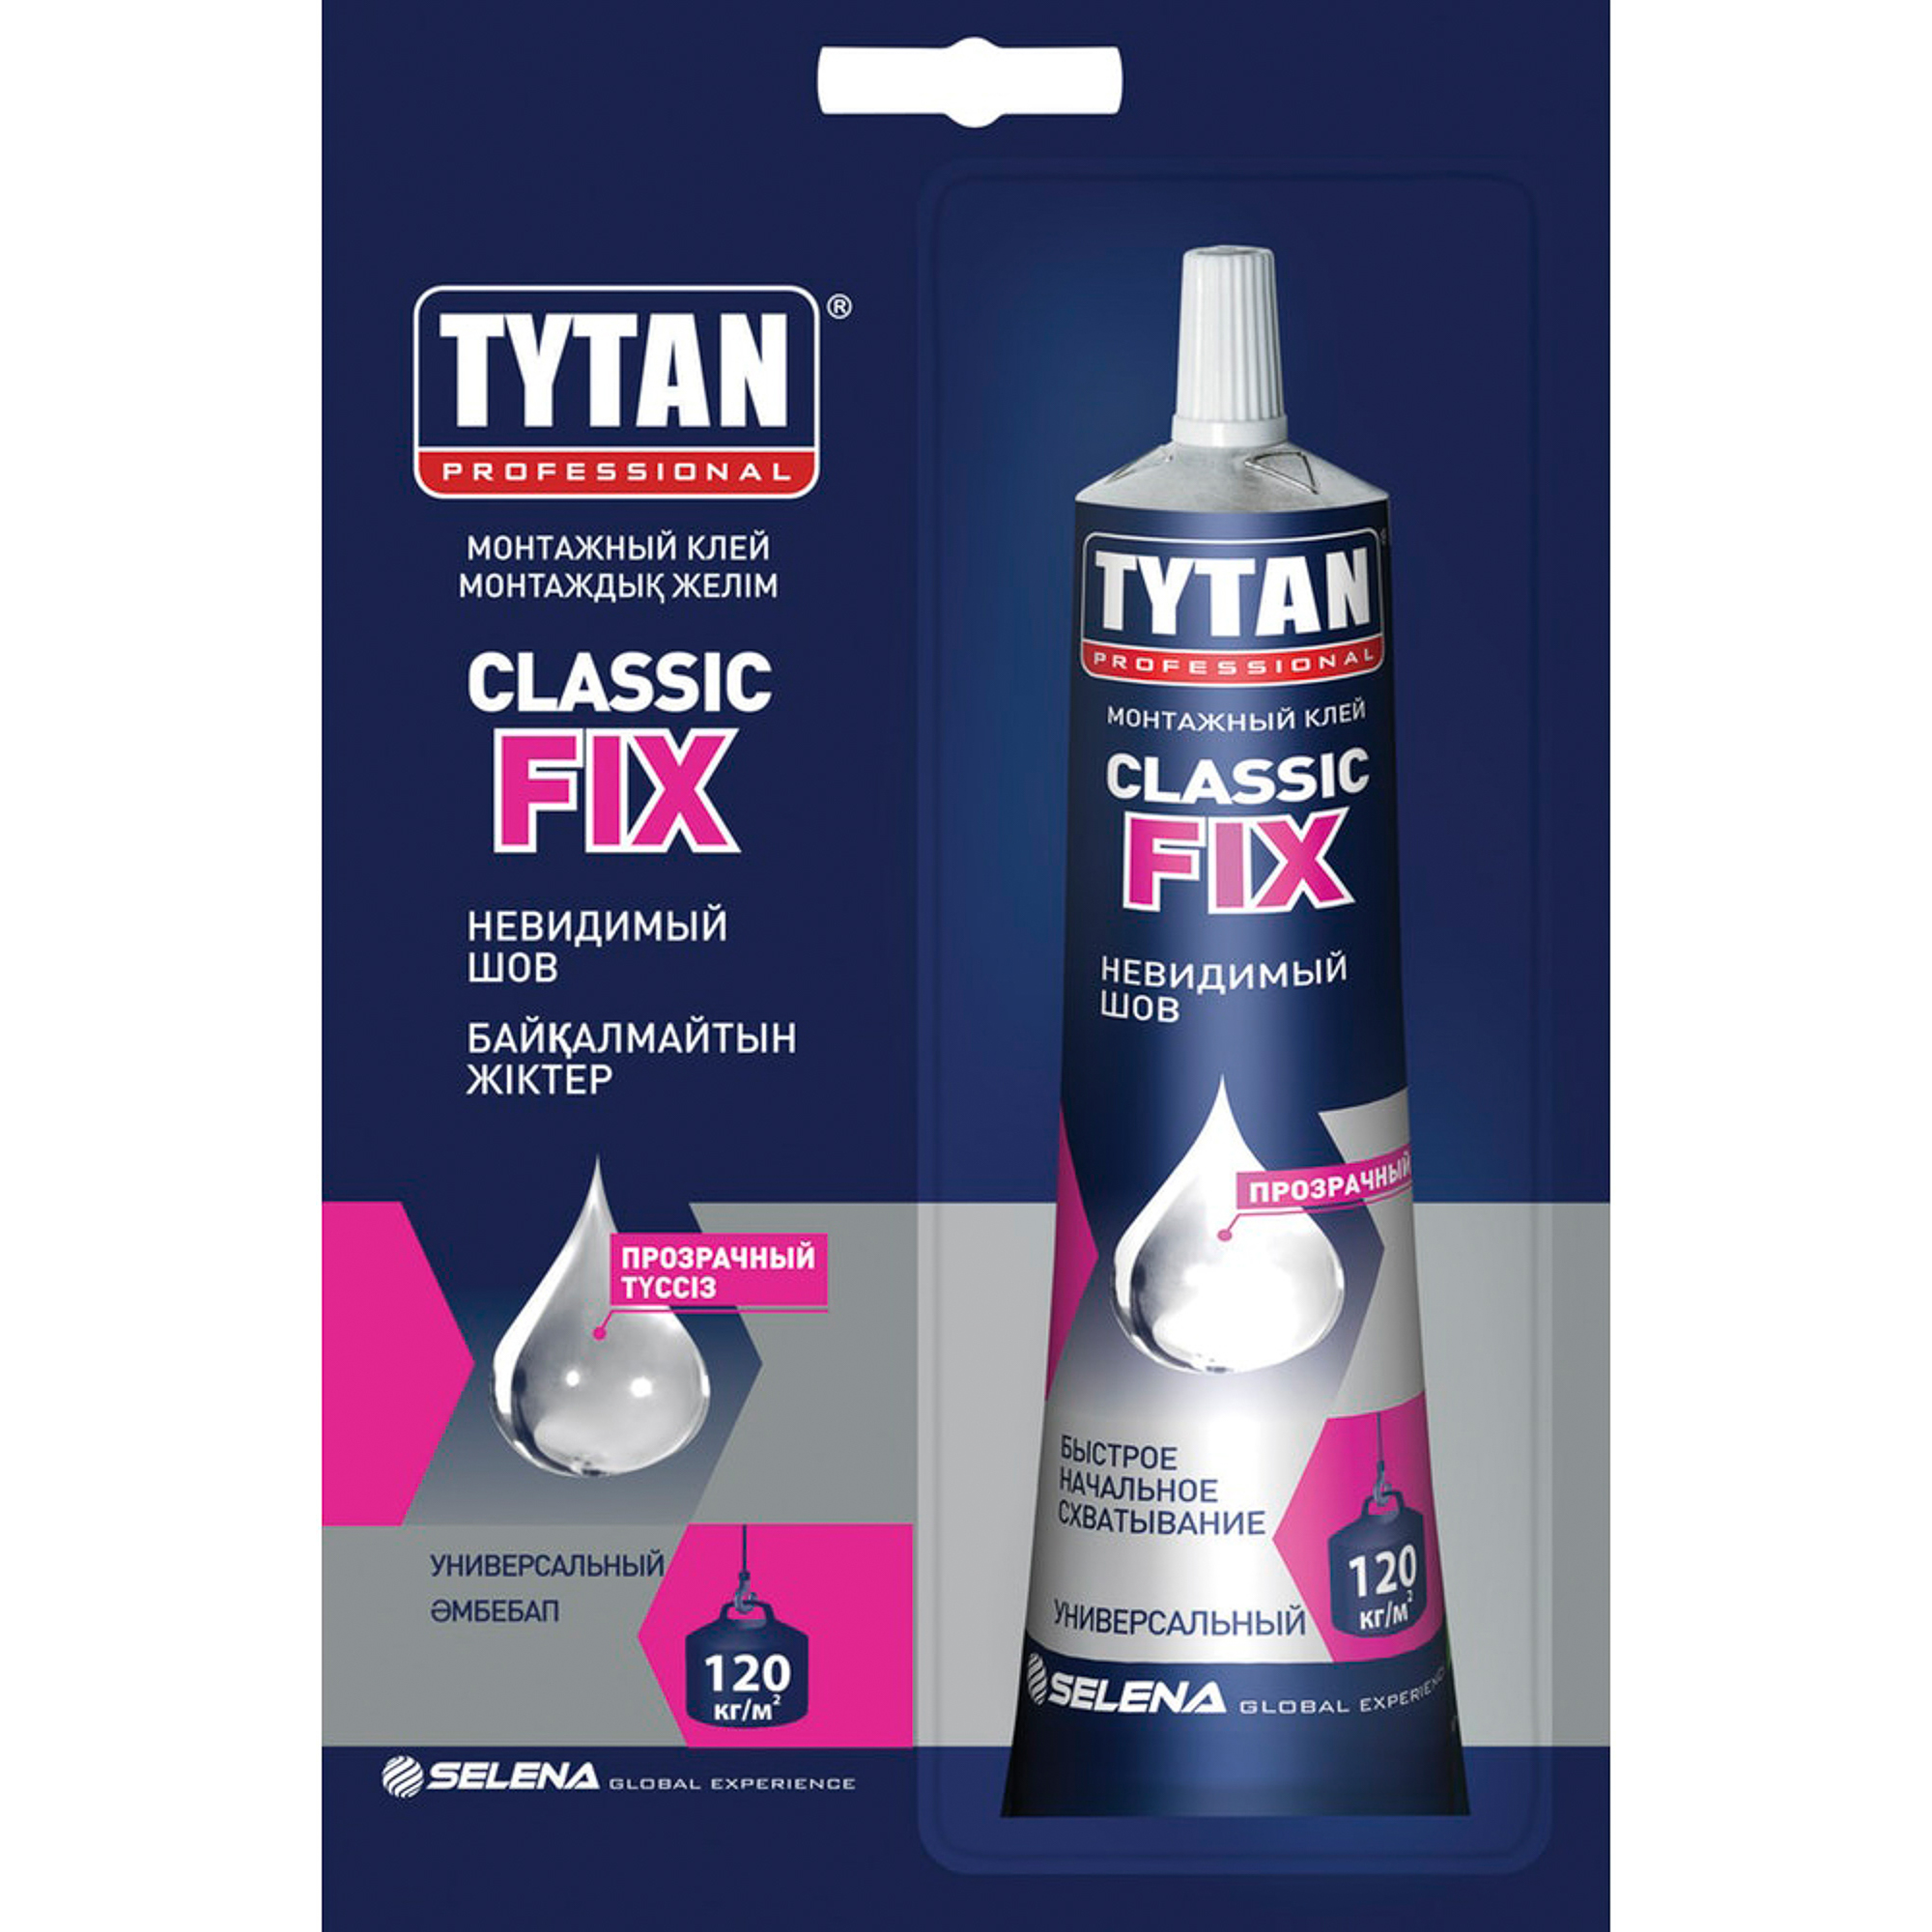 Клей tytan fix прозрачный. Монтажный клей Tytan professional Classic Fix, прозрачный. Tytan Classic Fix монтажный клей. Монтажный клей Титан фикс. Клей монтажный Tytan Classic Fix, 280 мл, прозрачный.